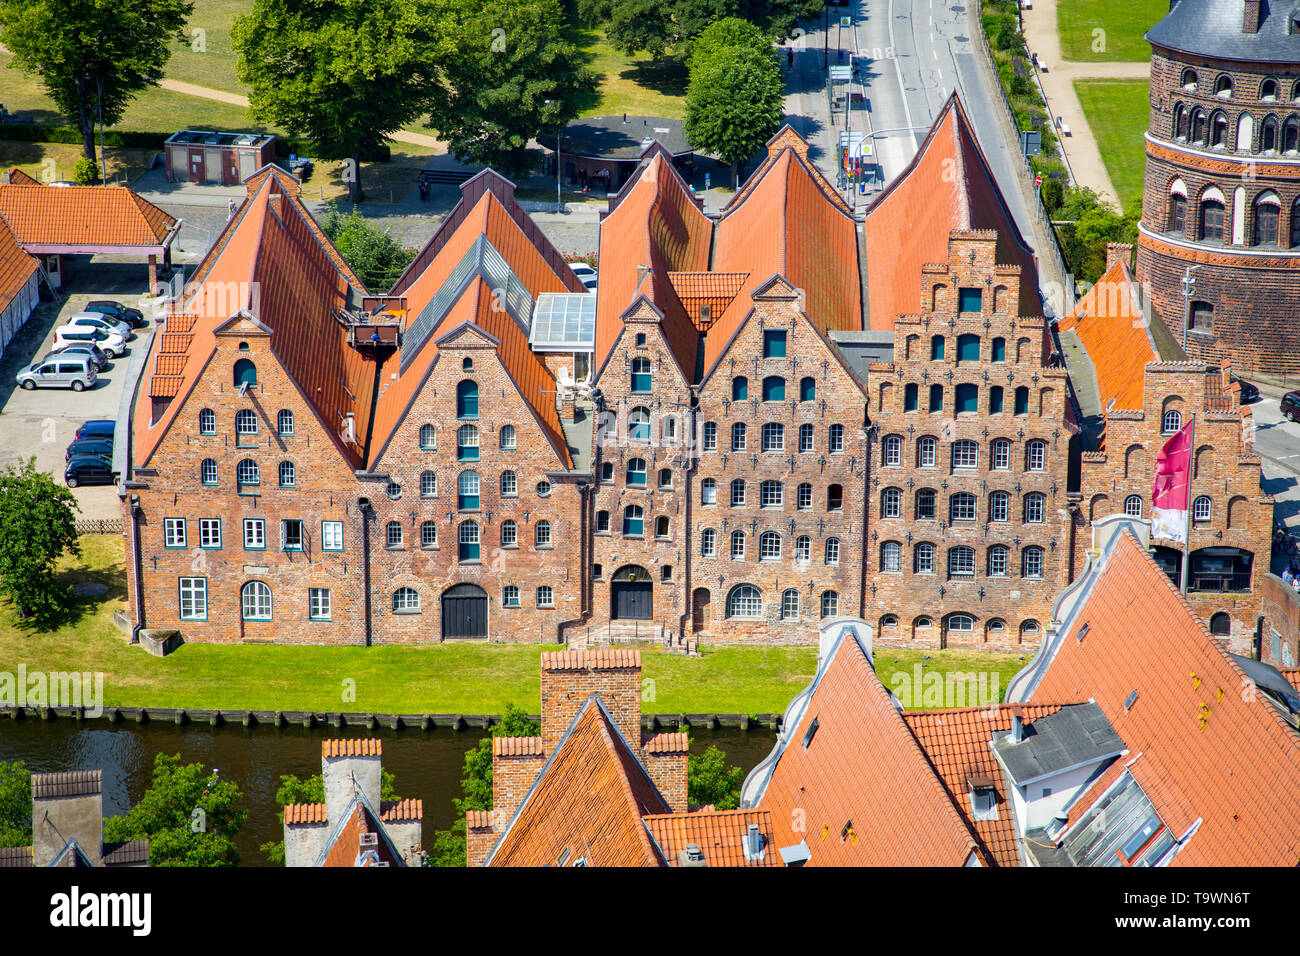 Schöne Aussicht auf die berühmten historischen Salzspeicher brick Lagerhaus Gebäude auf dem Oberen Trave in Lübeck auf einem malerischen sonnigen Tag im Sommer, Stockfoto